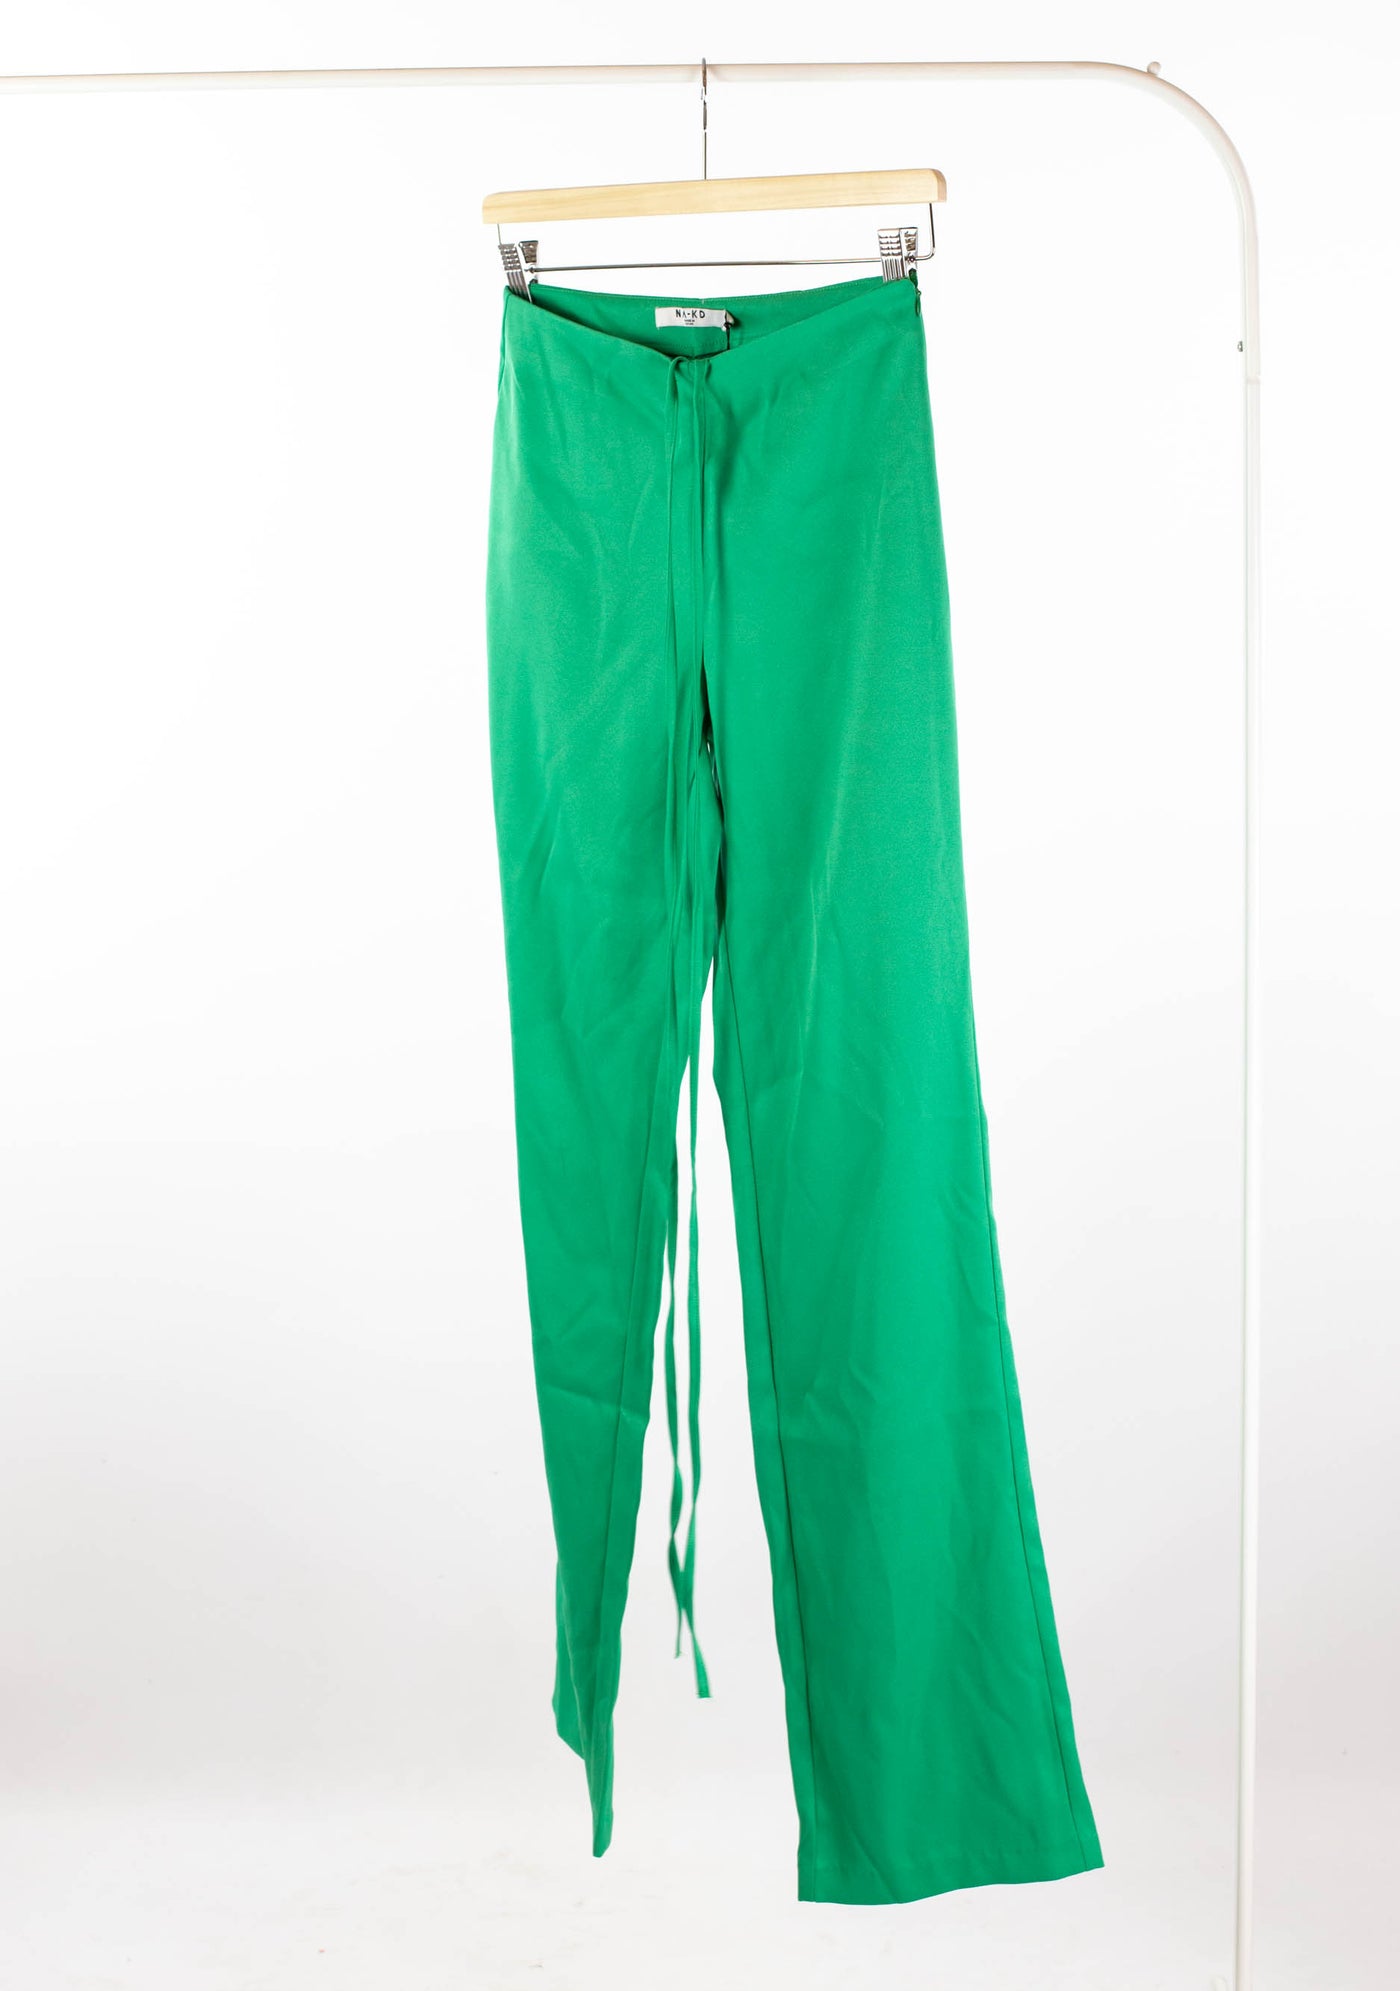 Pantalón verde de vestir NUEVO